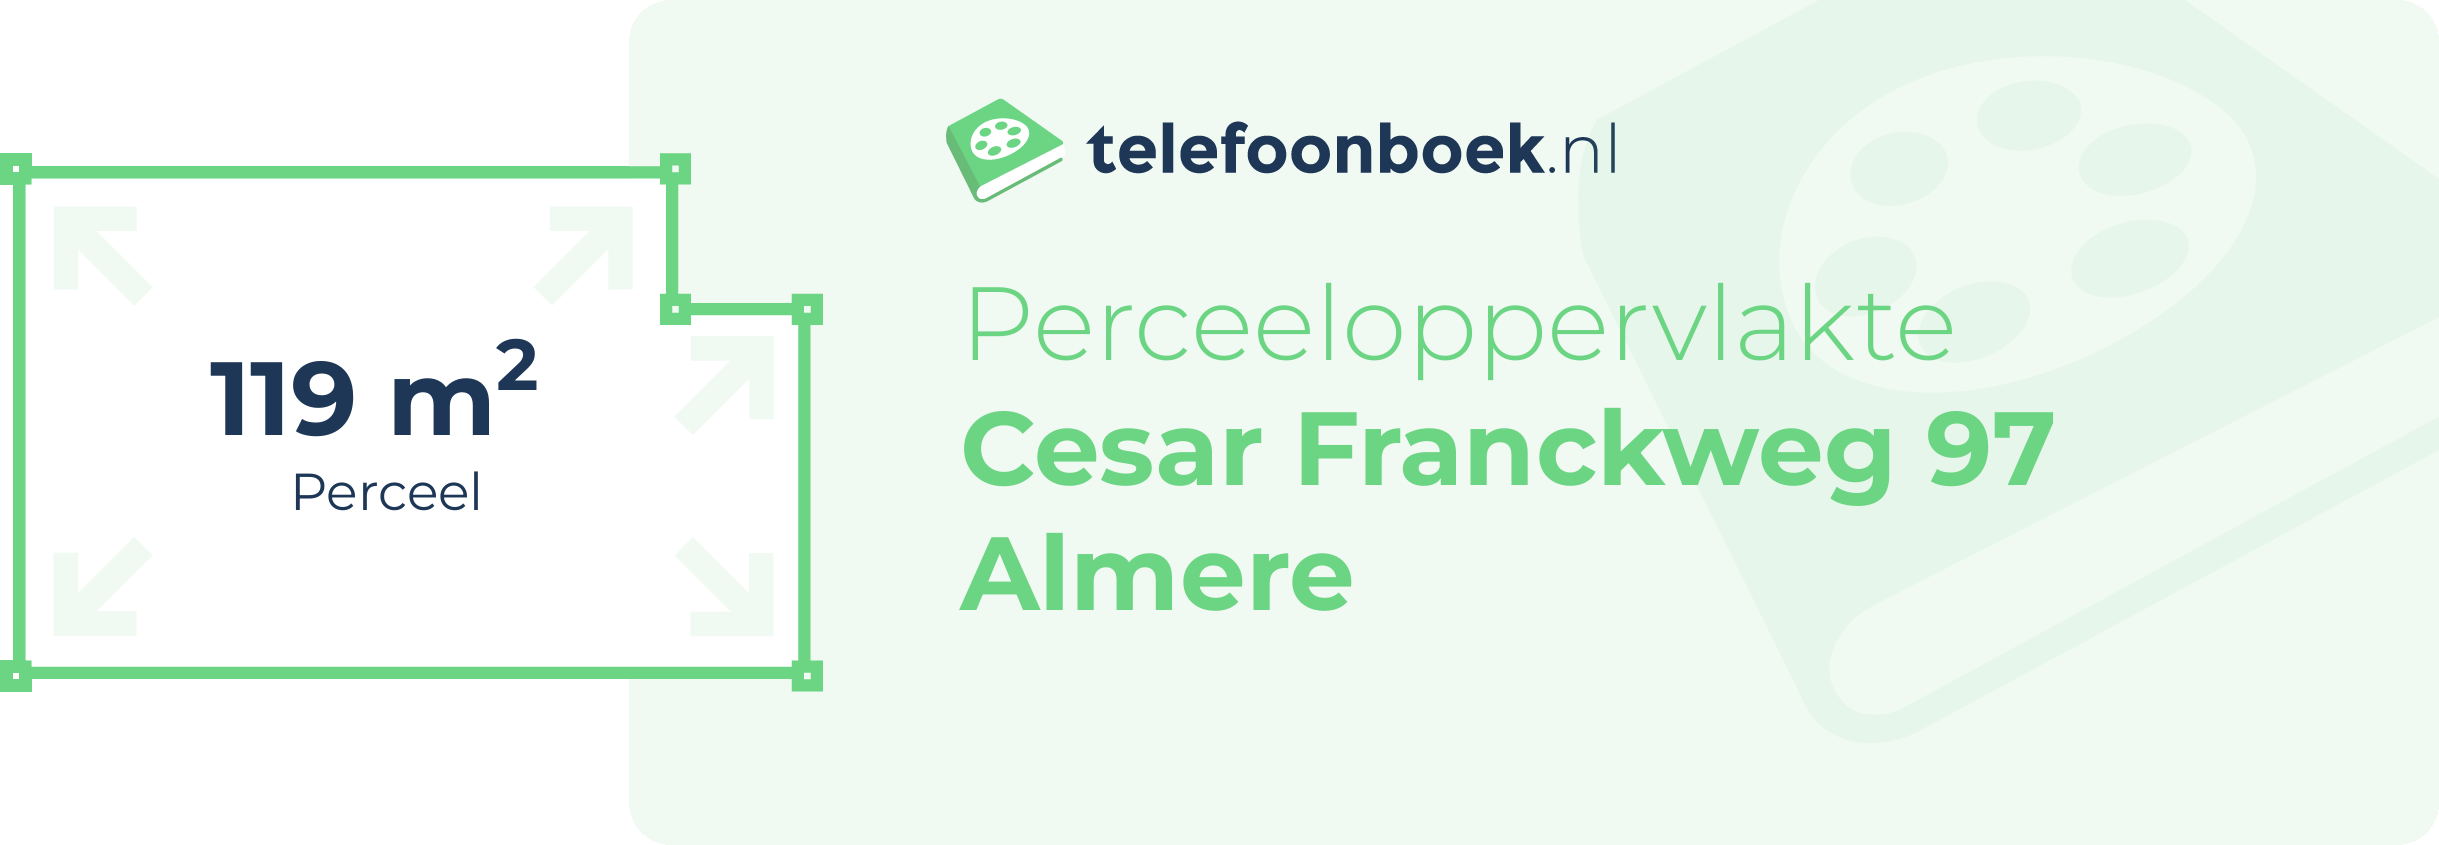 Perceeloppervlakte Cesar Franckweg 97 Almere